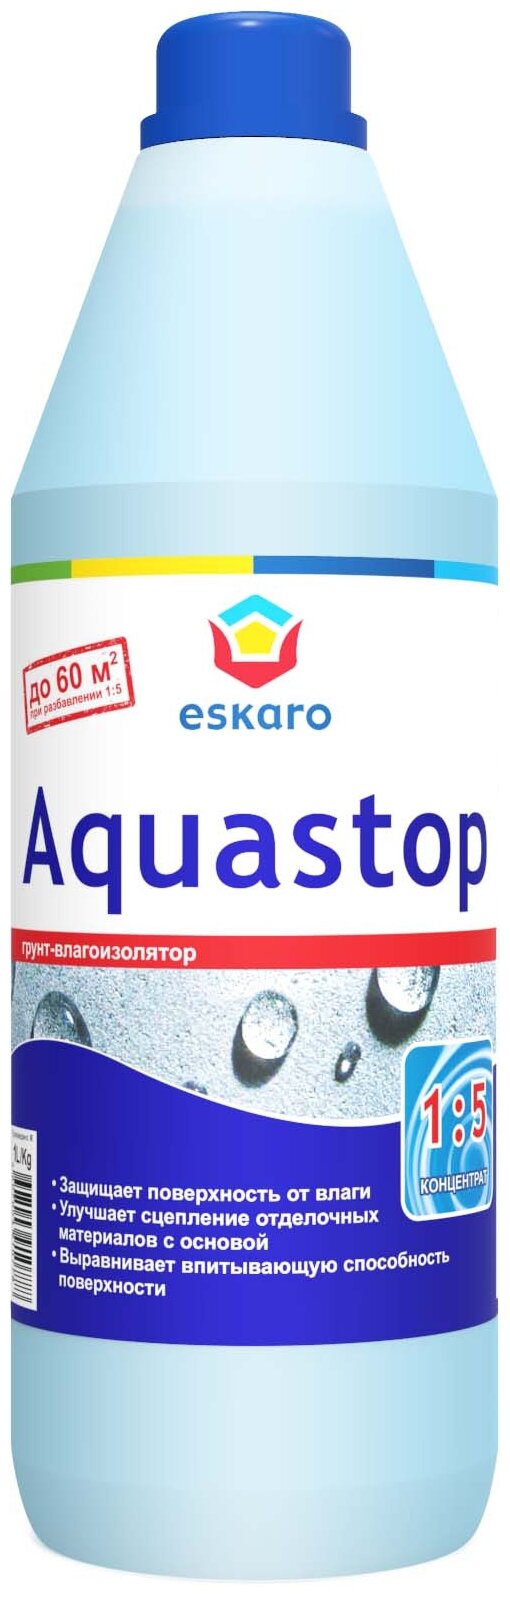 Грунтовка воднодисперсионная, акриловая, Eskaro, Aquastop Classic, концентрат 1:5, 1 л